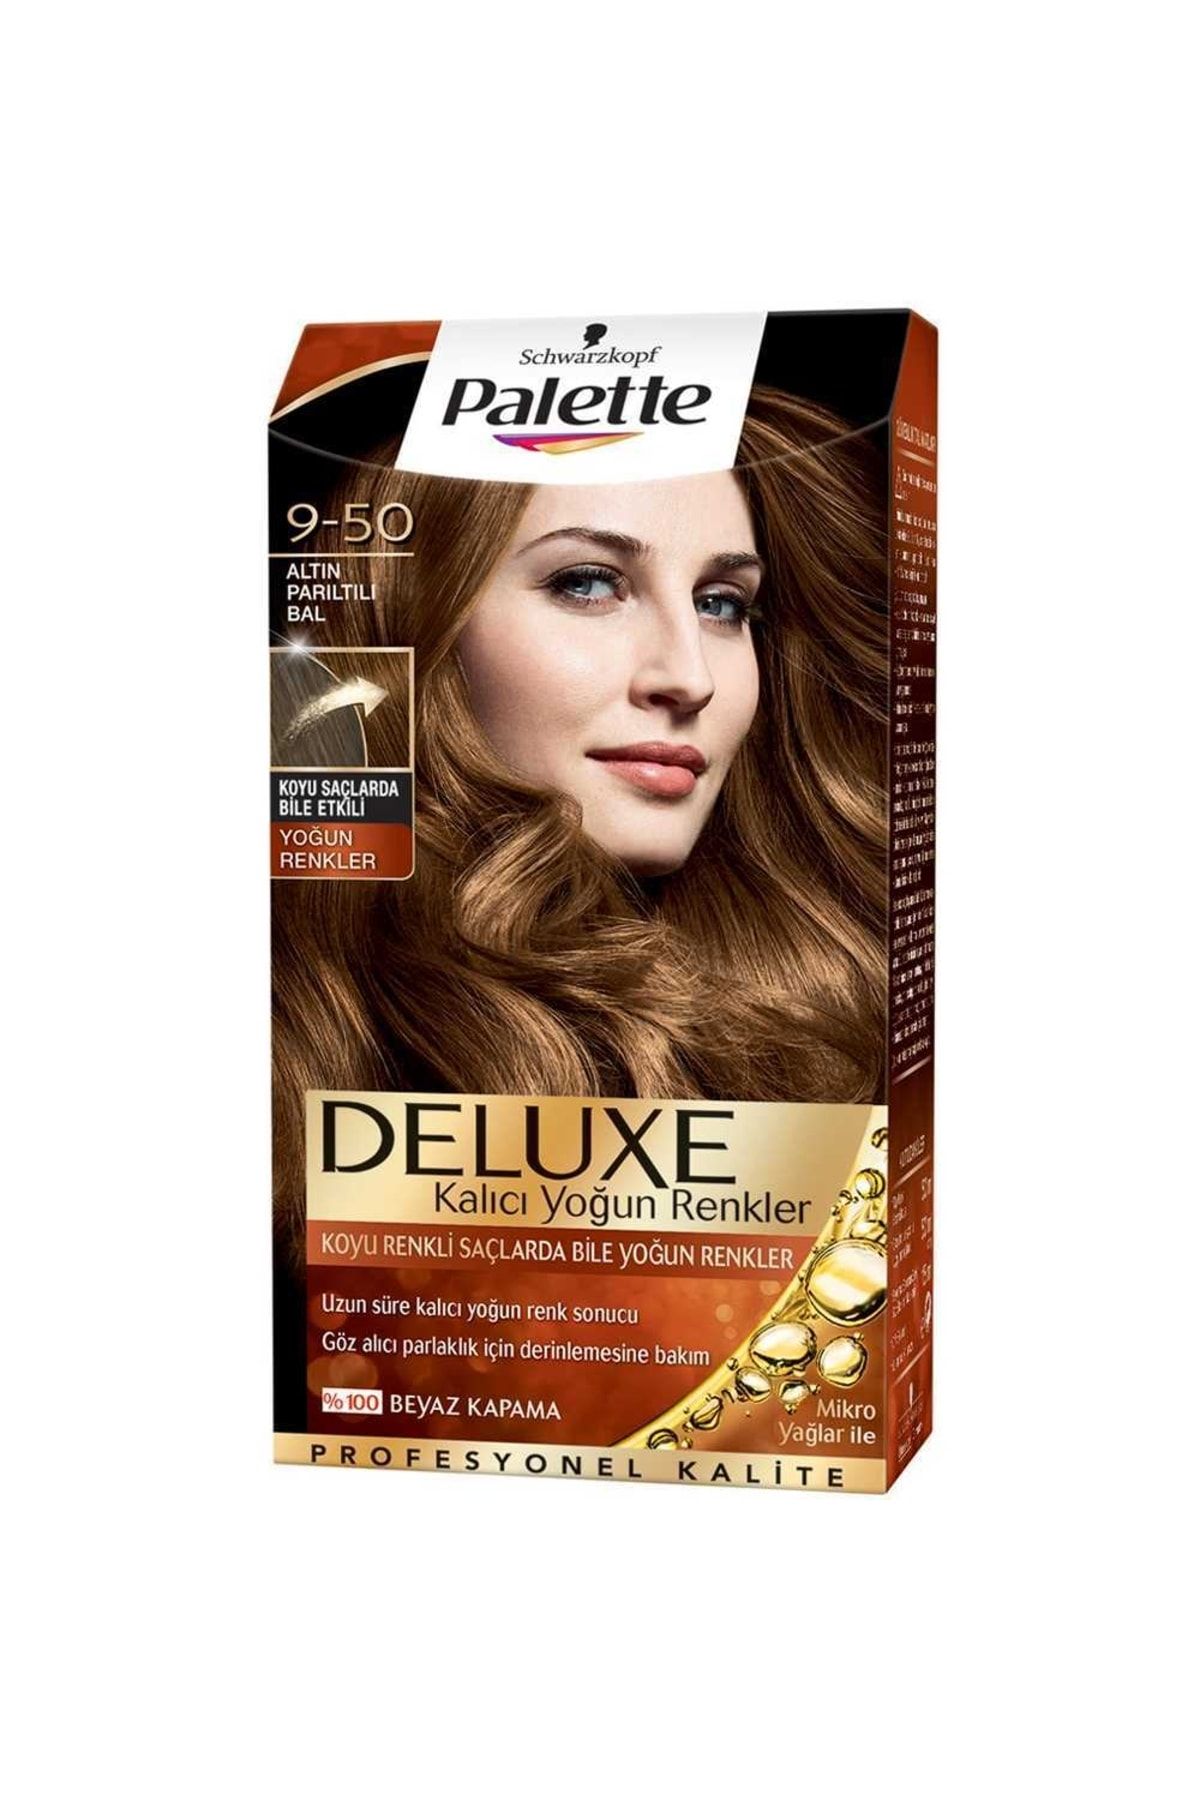 Palette FinDit Palette Saç Boyası 9-50 Altın Parıltılı Bal